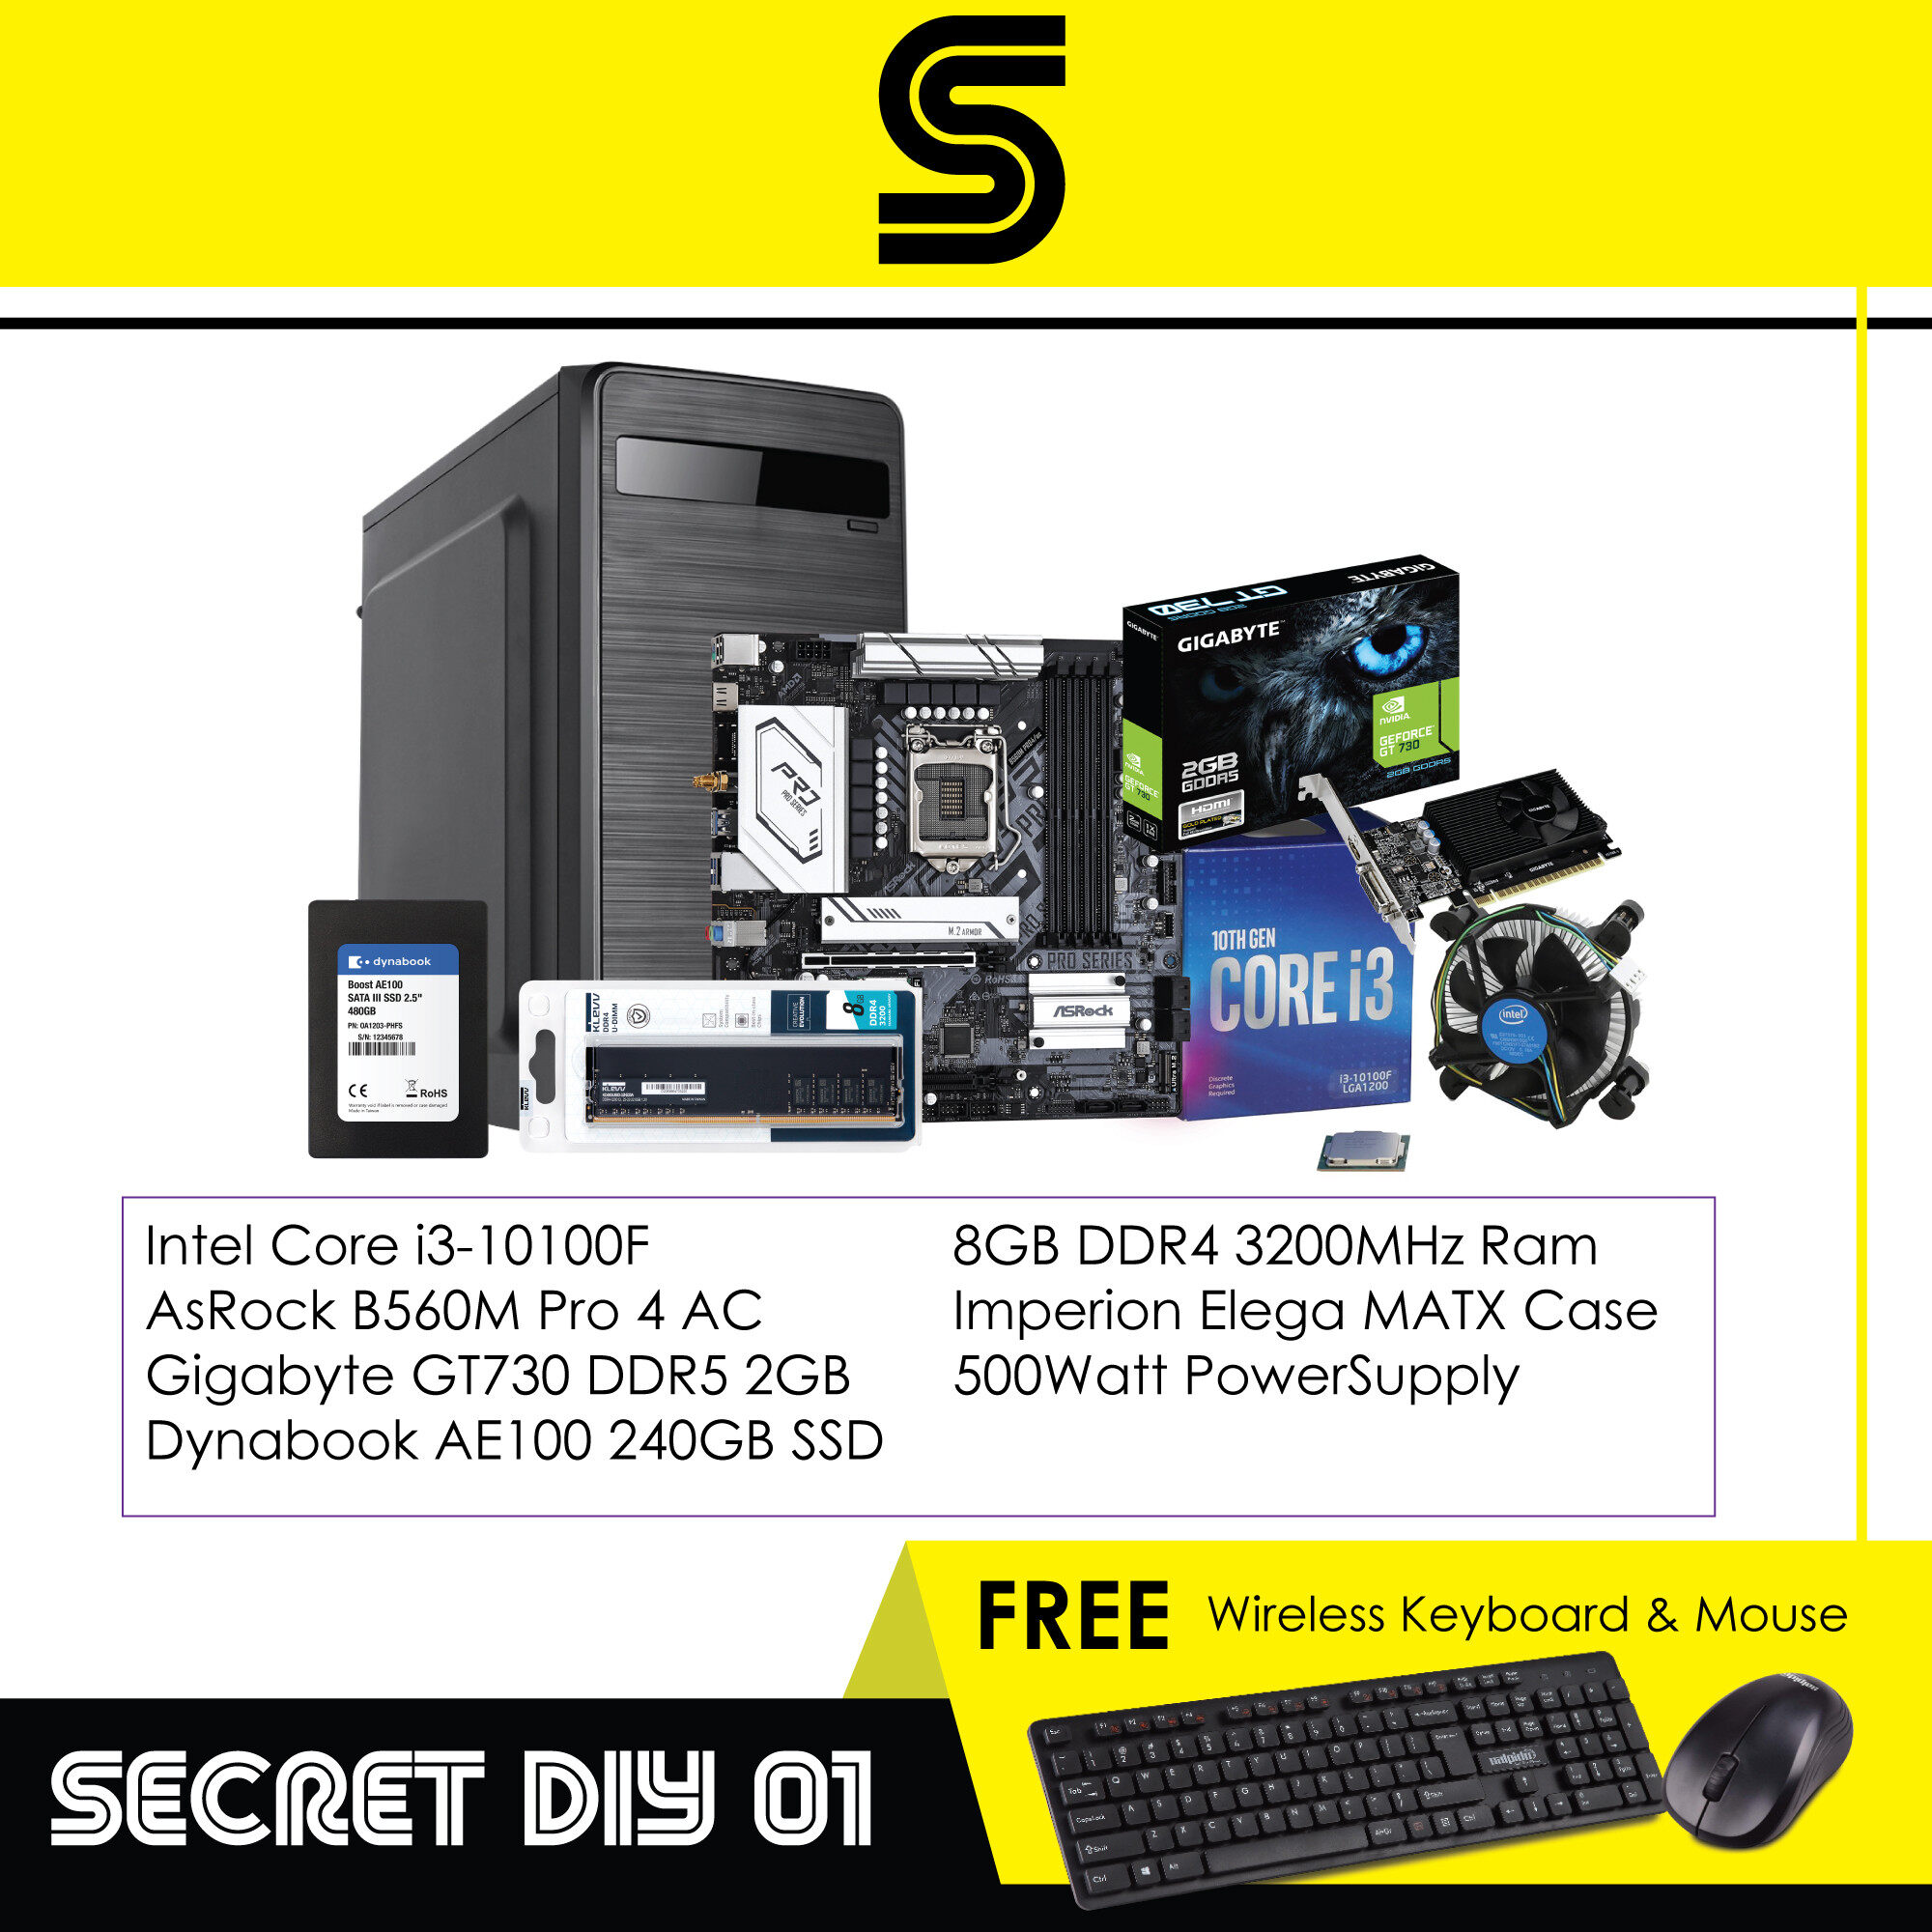 Intel Secret DIY 01 PC - Intel Core i3-10100F/B560M Motherboard/GT730 2GB/8GB DDR4/240GB SSD/MATX Case/500w